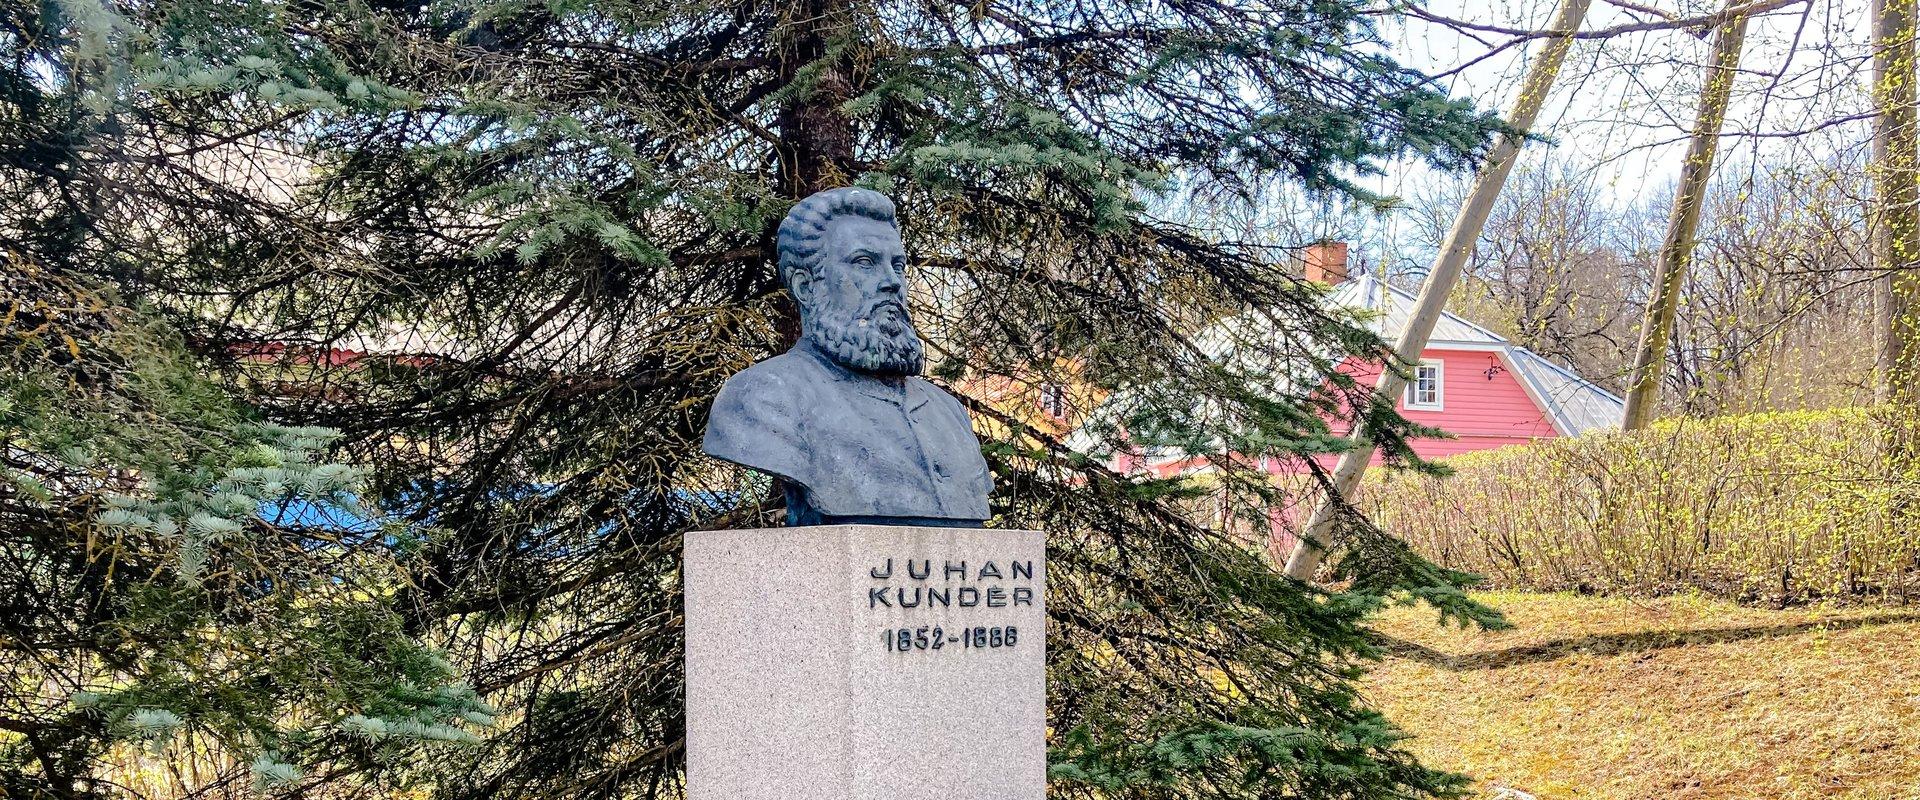 Juhan Kunderi monument on püstitatud Eesti rahvusliku ärkamisaja tegelase, Rakveres elanud koolimehe ja näitekirjaniku Juhan Kunderi mälestuseks. Roma